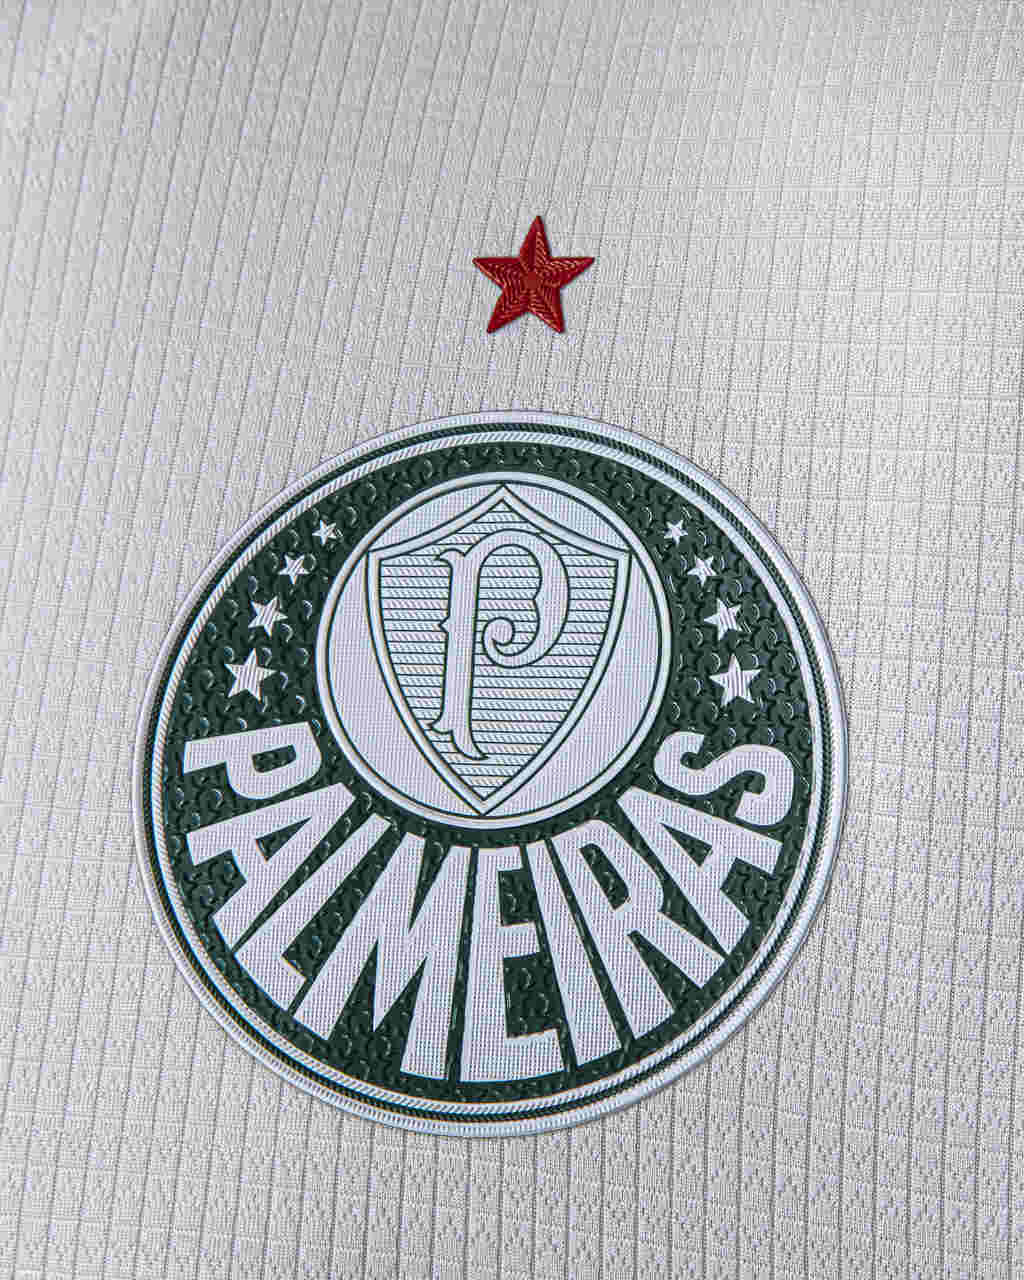 Independente-AP lança uniformes para disputa da temporada 2021, independente-ap